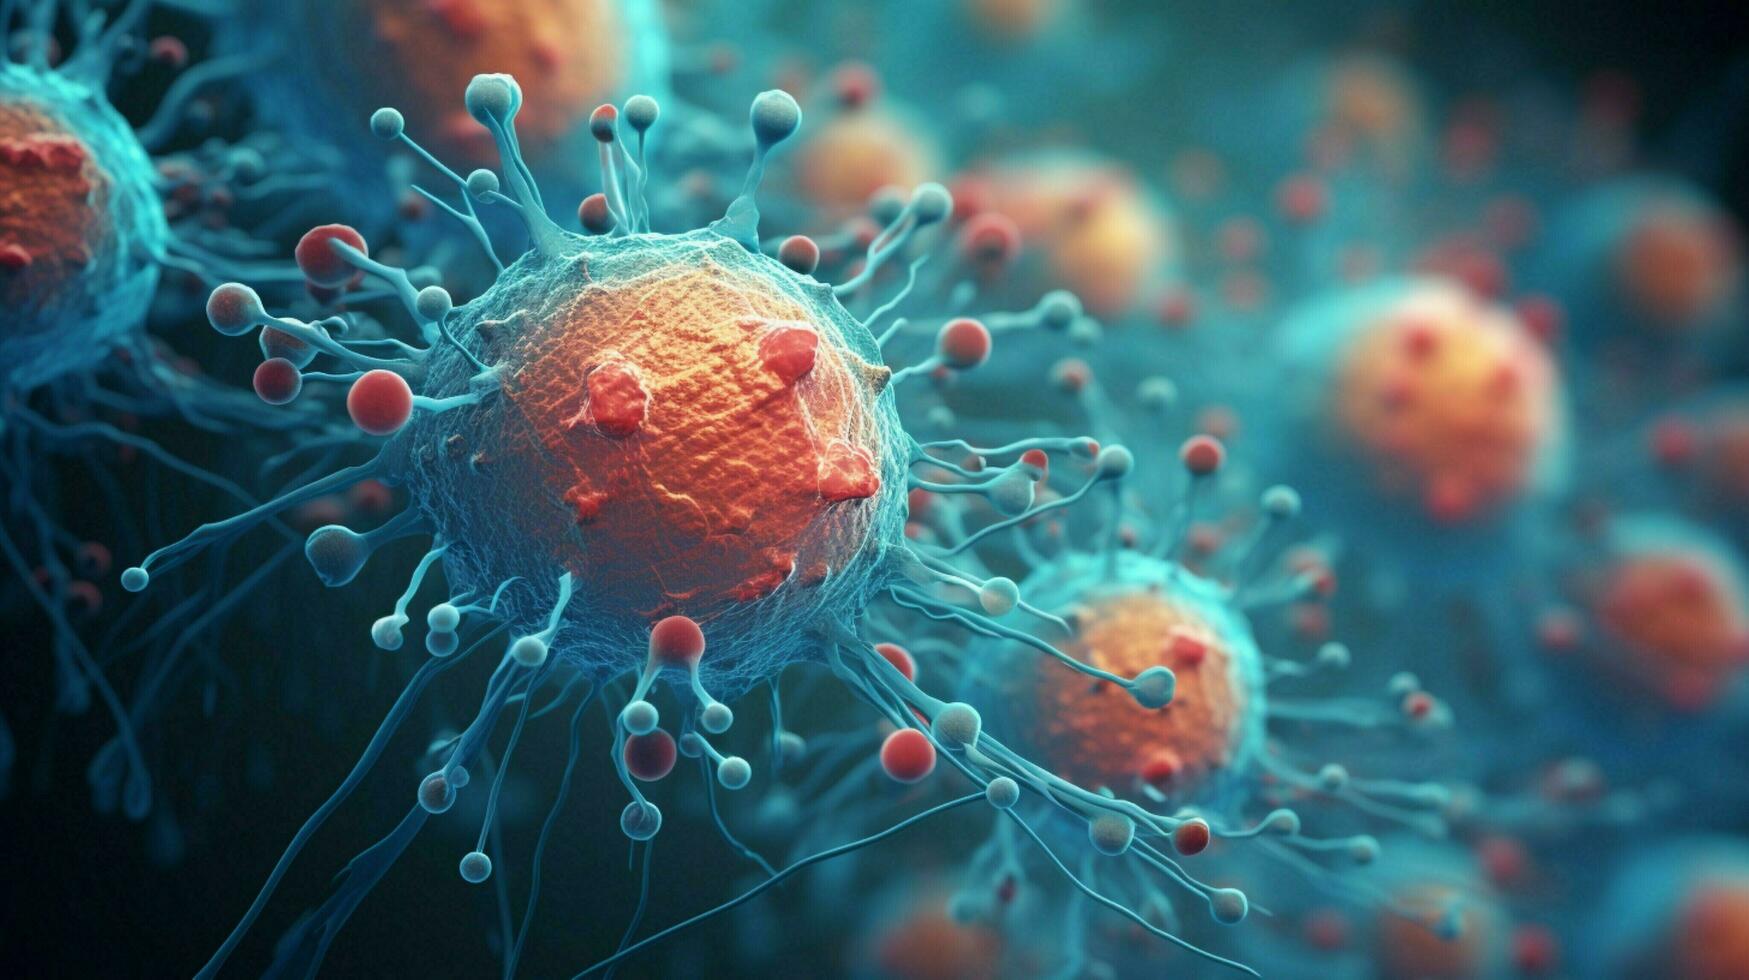 moleculair structuur van kanker cellen onder microscoop foto